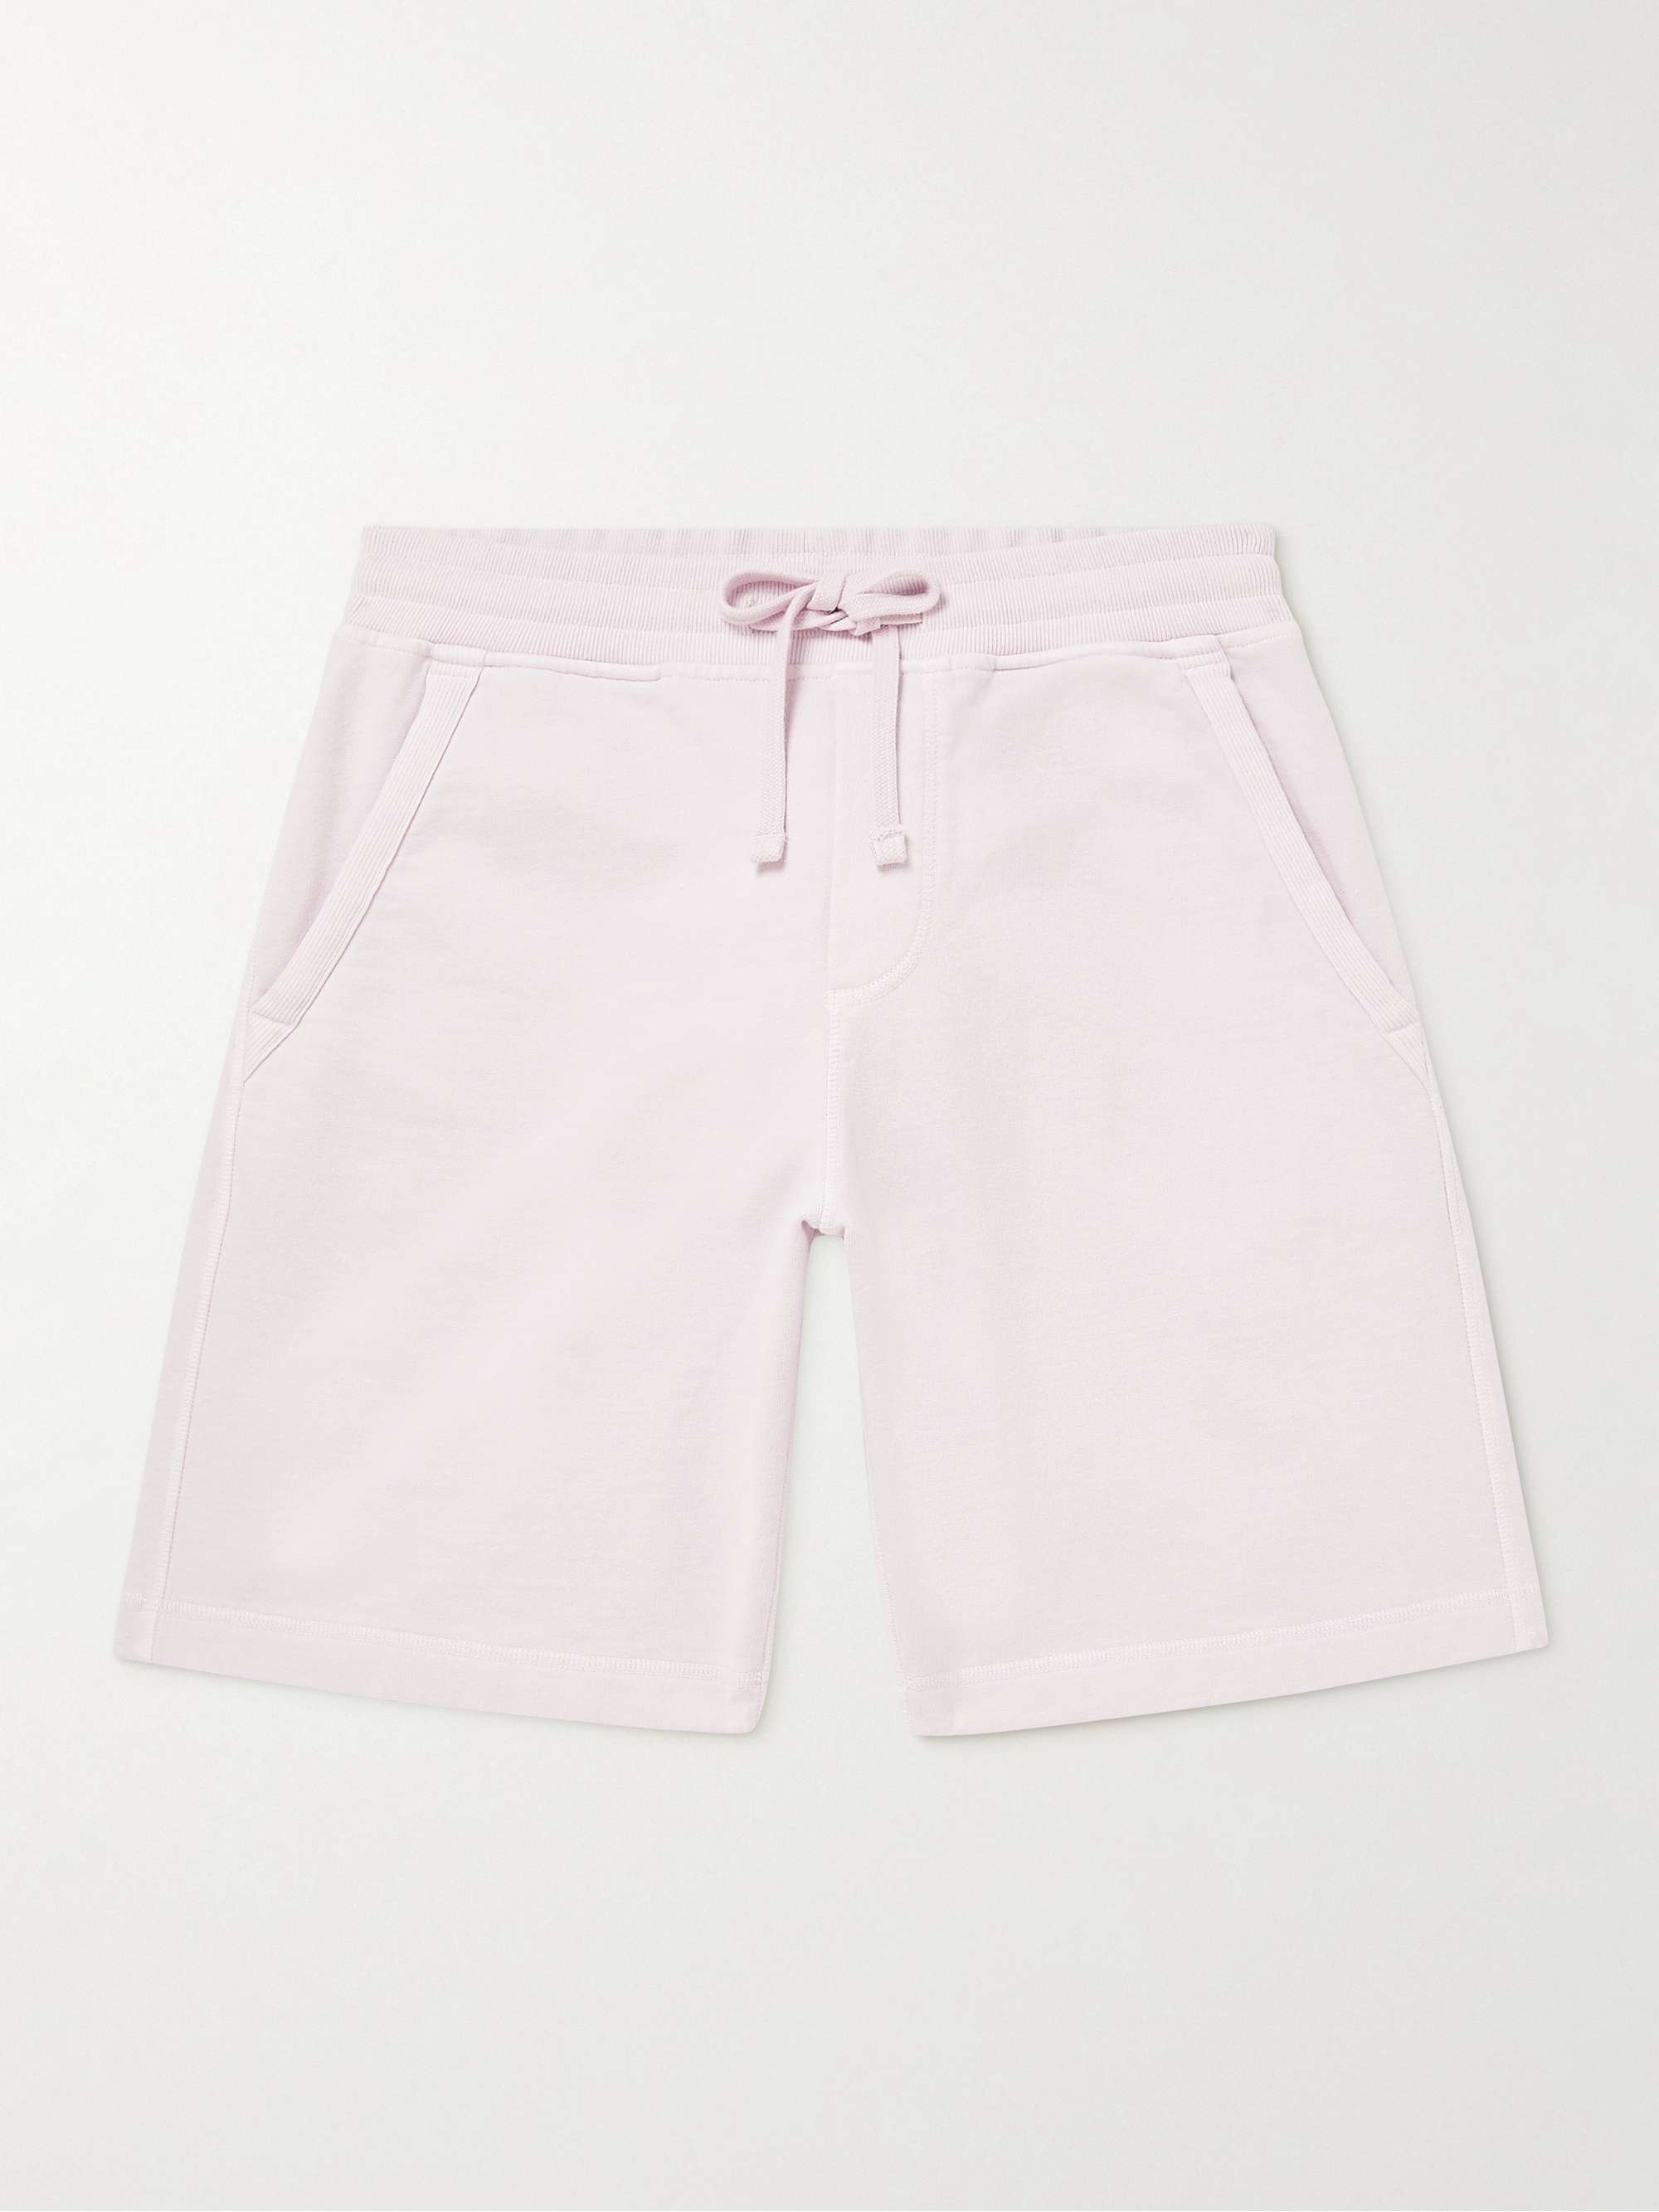 ORLEBAR BROWN Frederick Garment-Dyed Organic Cotton-Jersey Drawstring Shorts